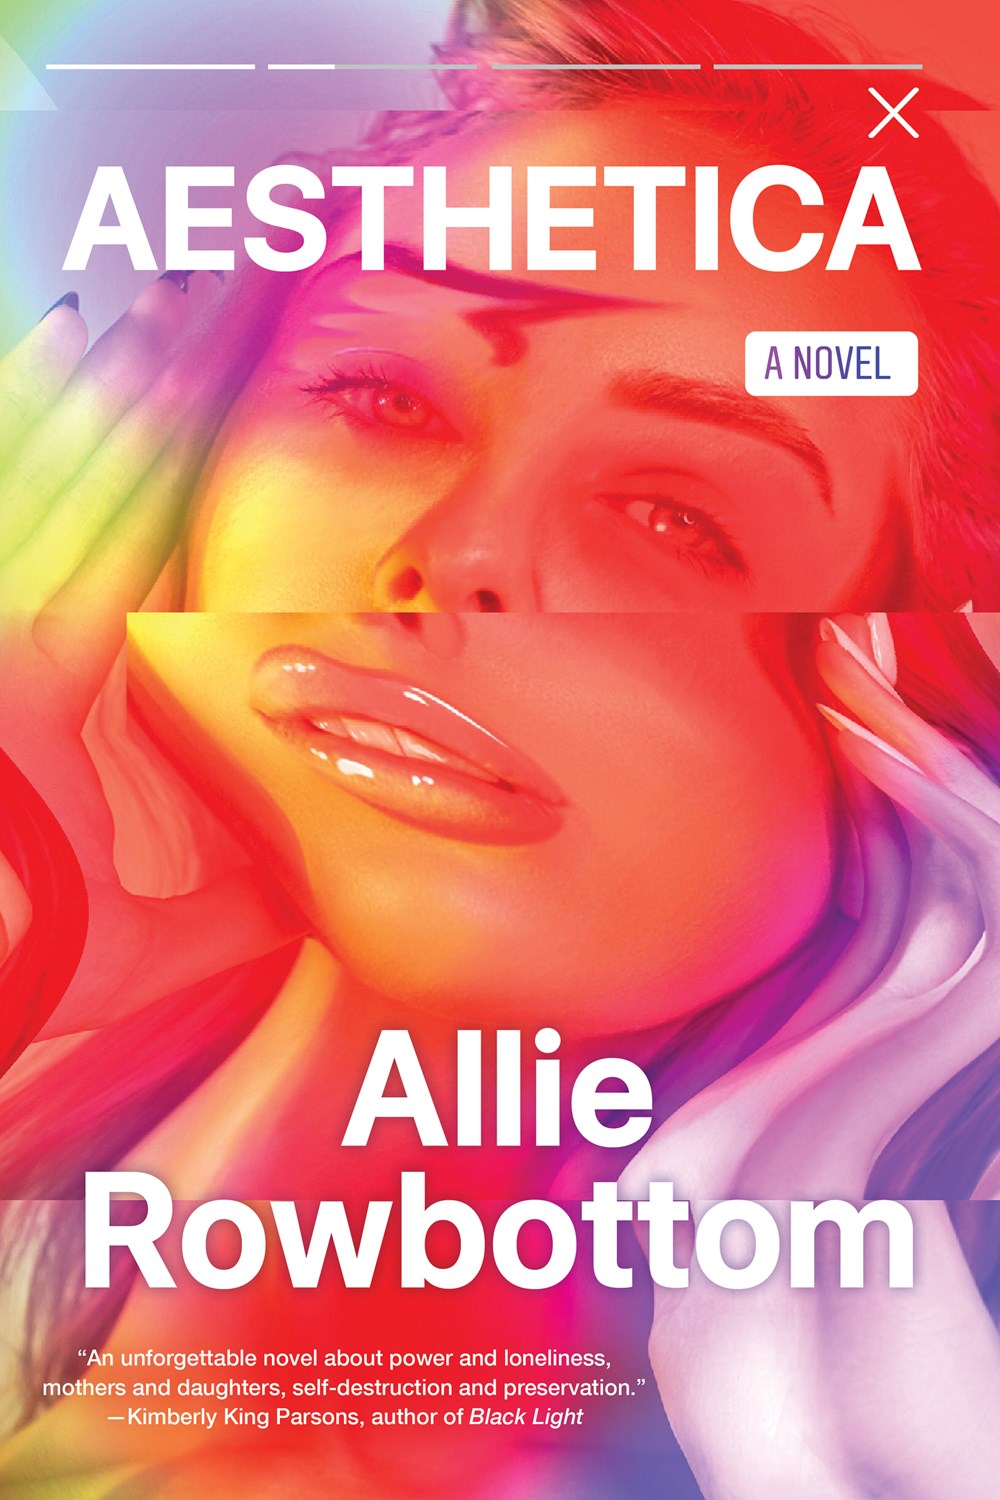 Aesthetica: A Novel by Allie Rowbottom